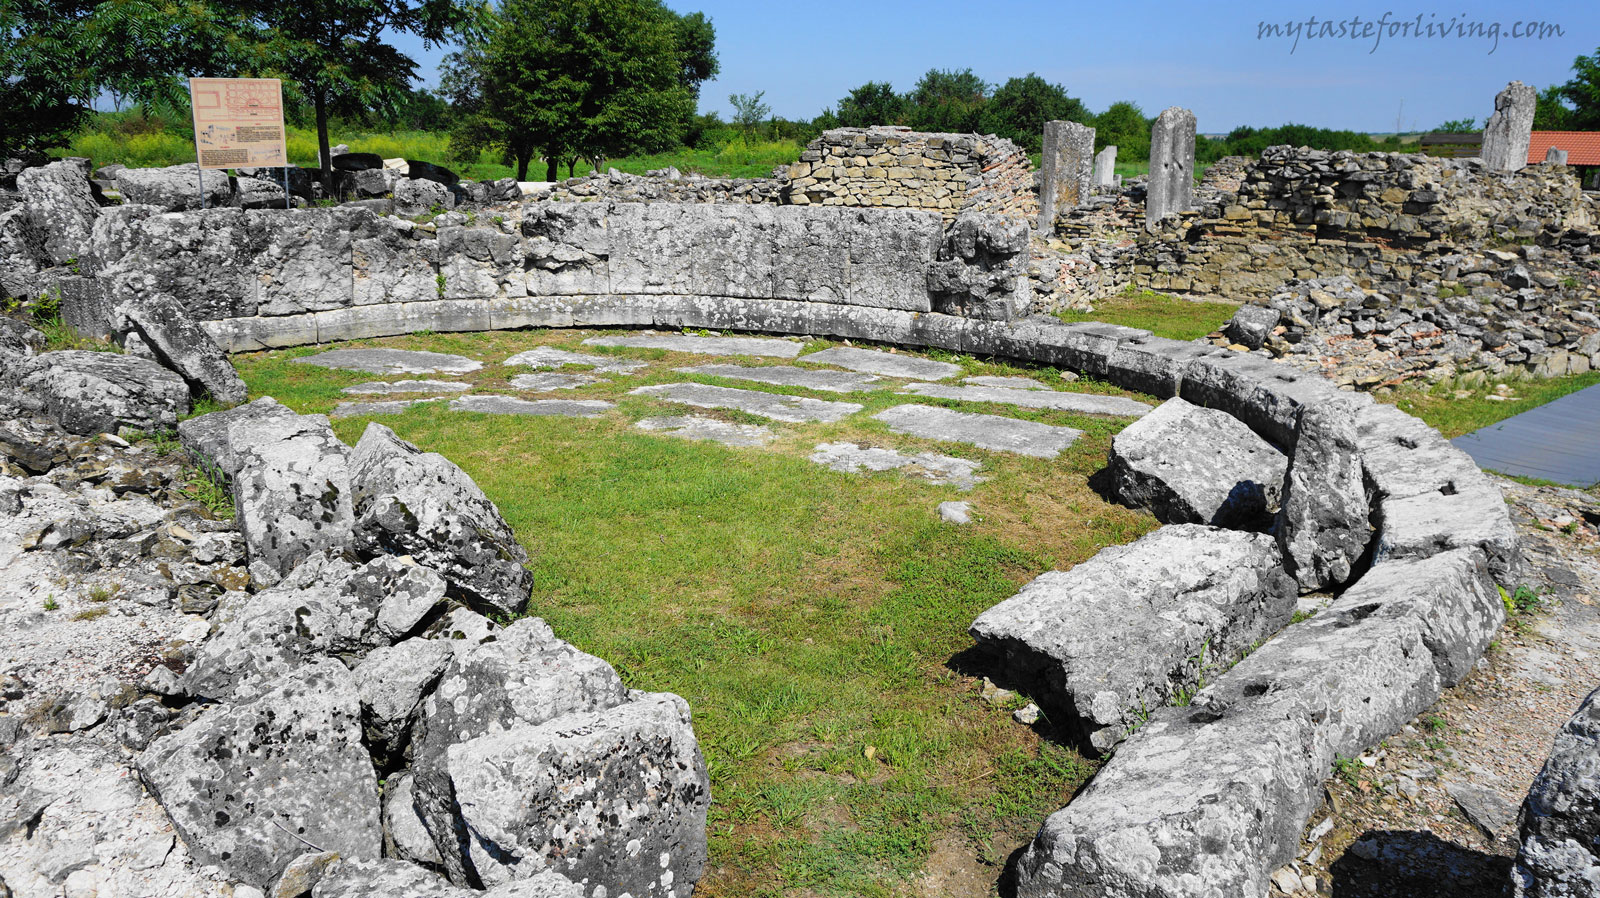 Останките от ранновизантийския град Никополис ад Иструм (в превод „Град на победата на Дунава“) се намират на около 20 км северно от град Велико Търново по пътя за Русе. 